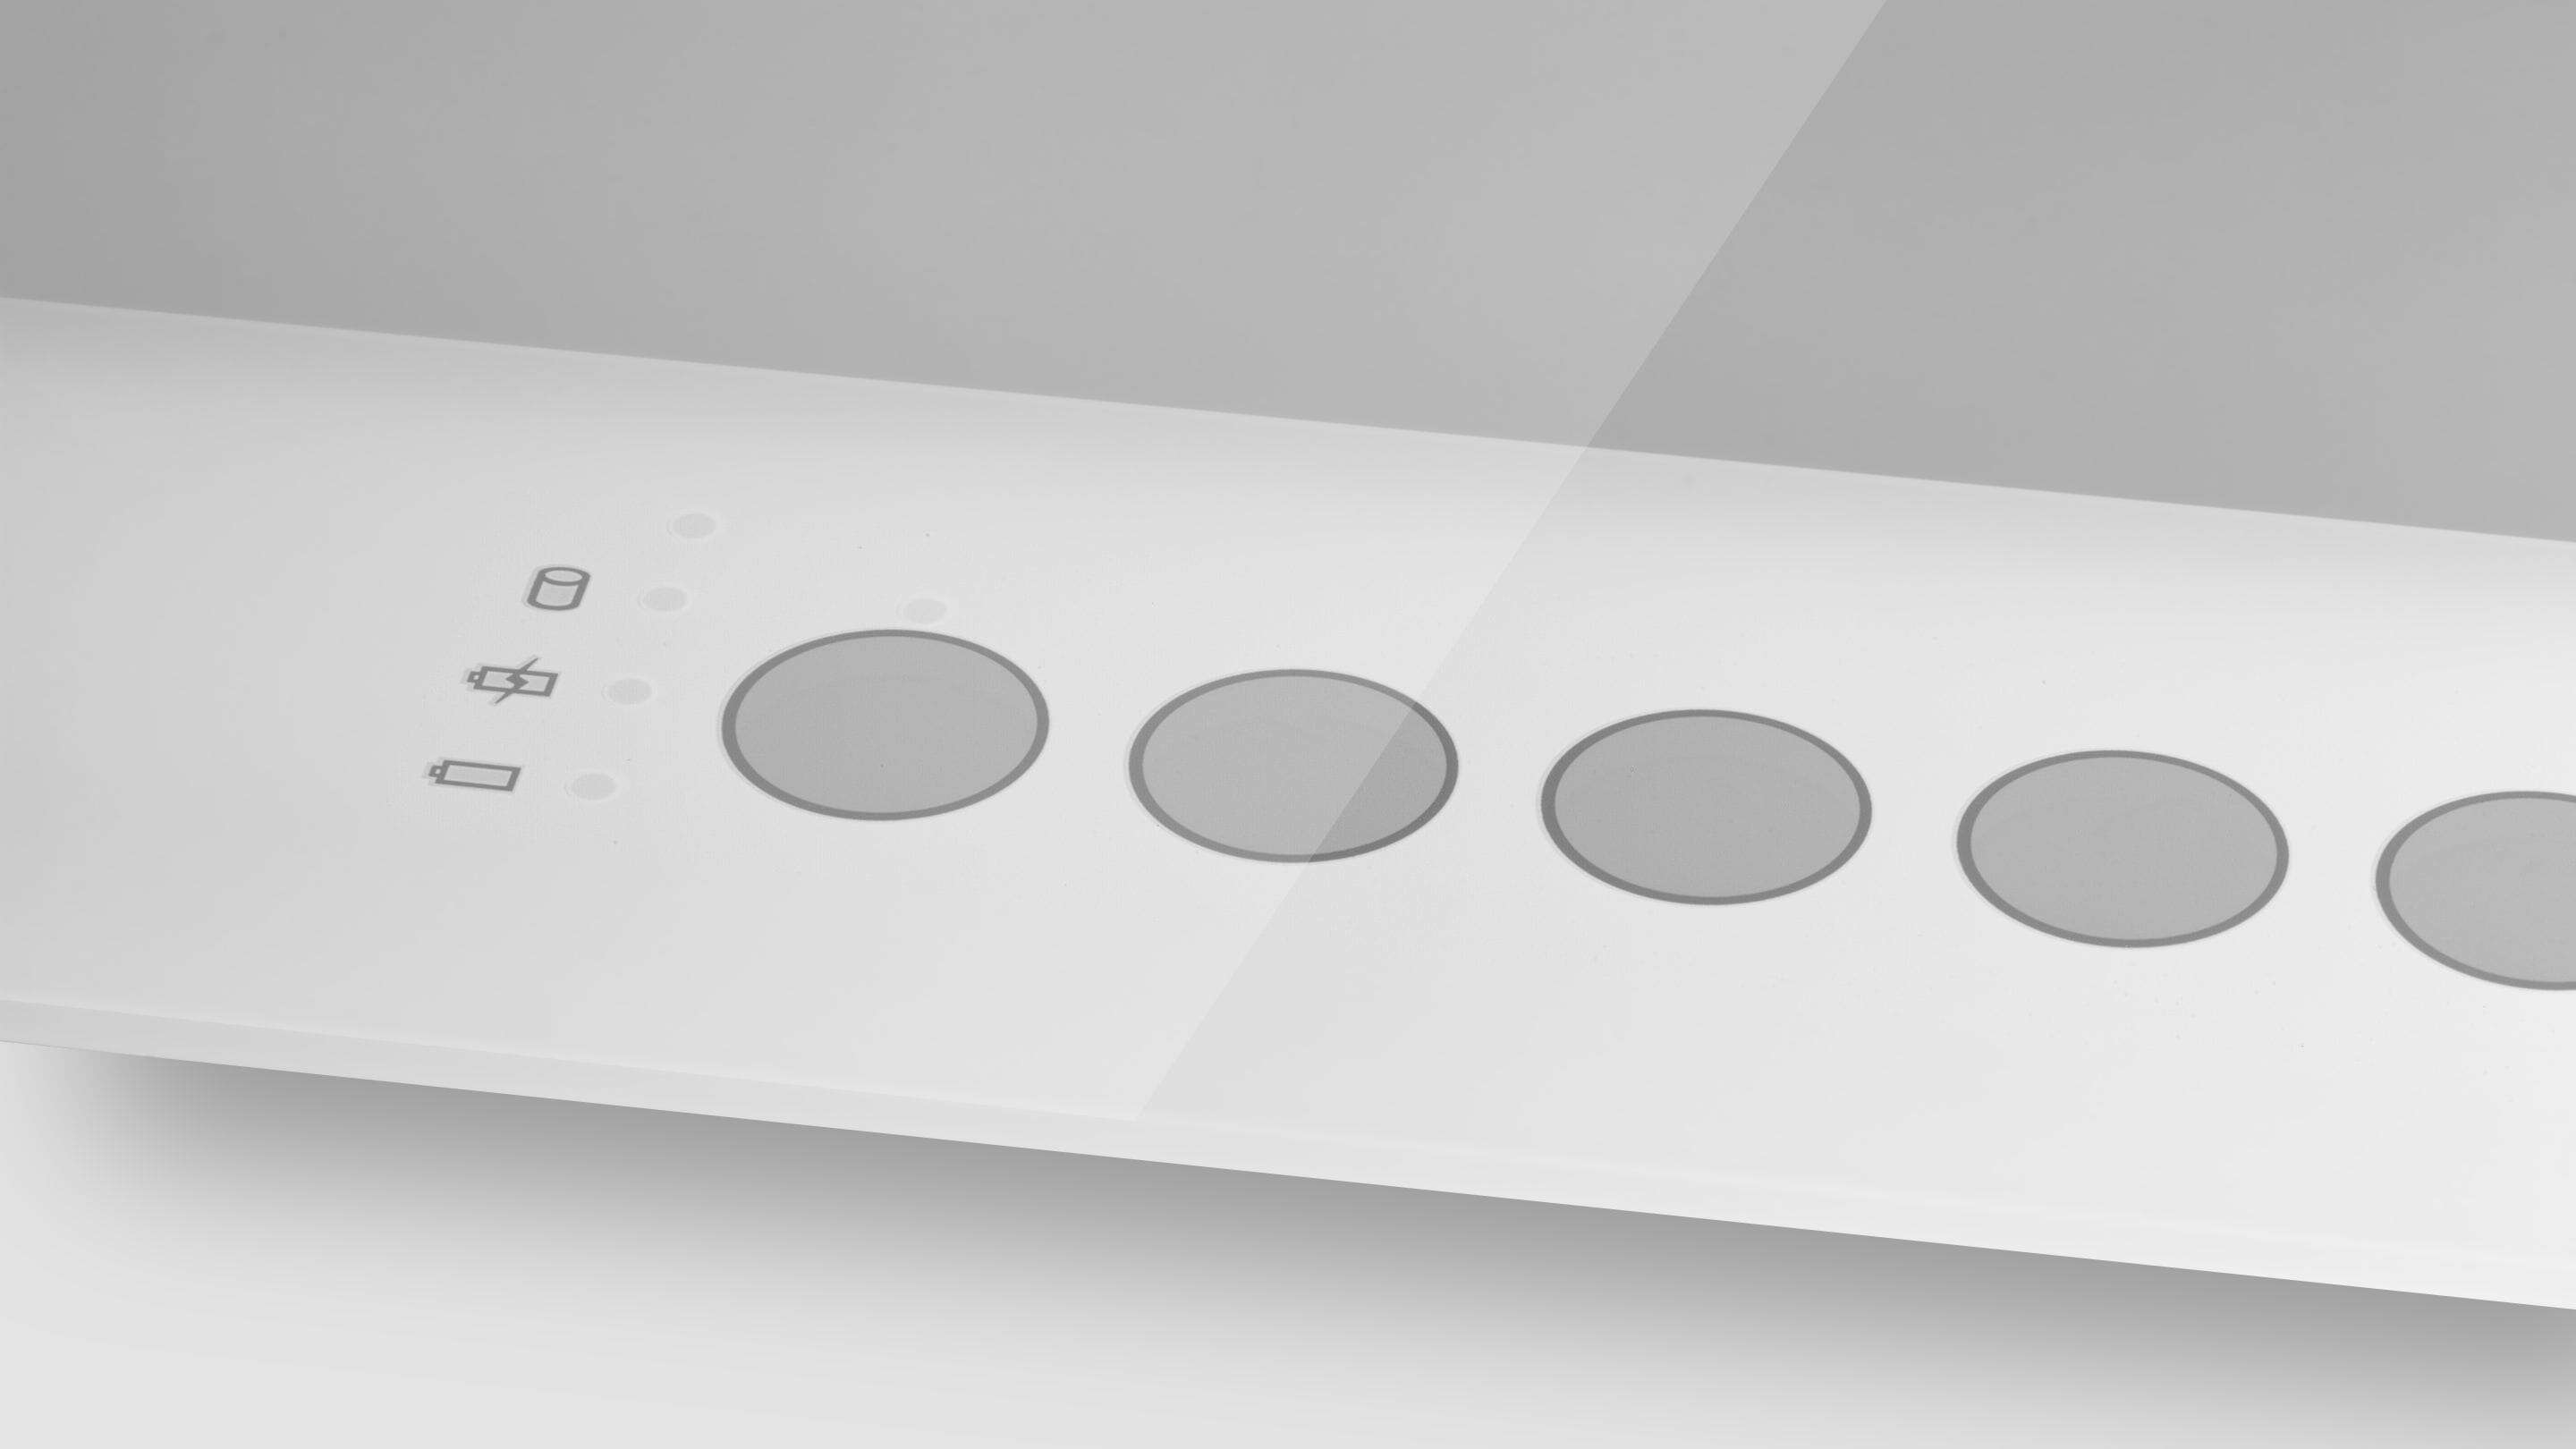 PCAP Touch Screen - Botões impressos em vidro um objeto retangular branco com círculos sobre ele